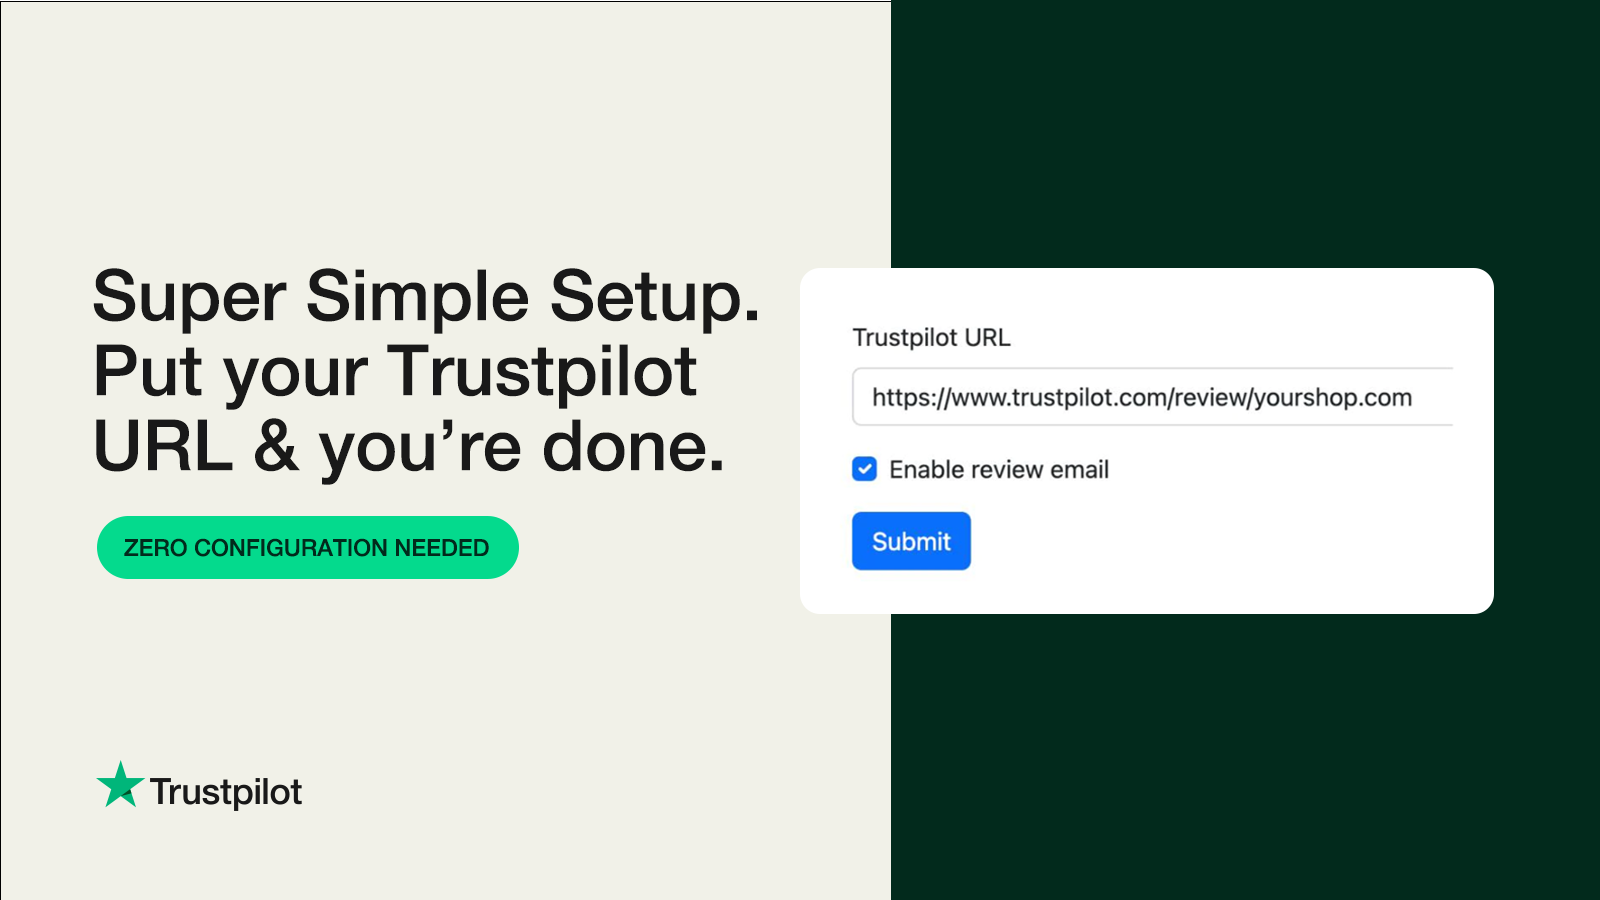 Configuración super simple. ¡Pon tu URL de Trustpilot y listo!